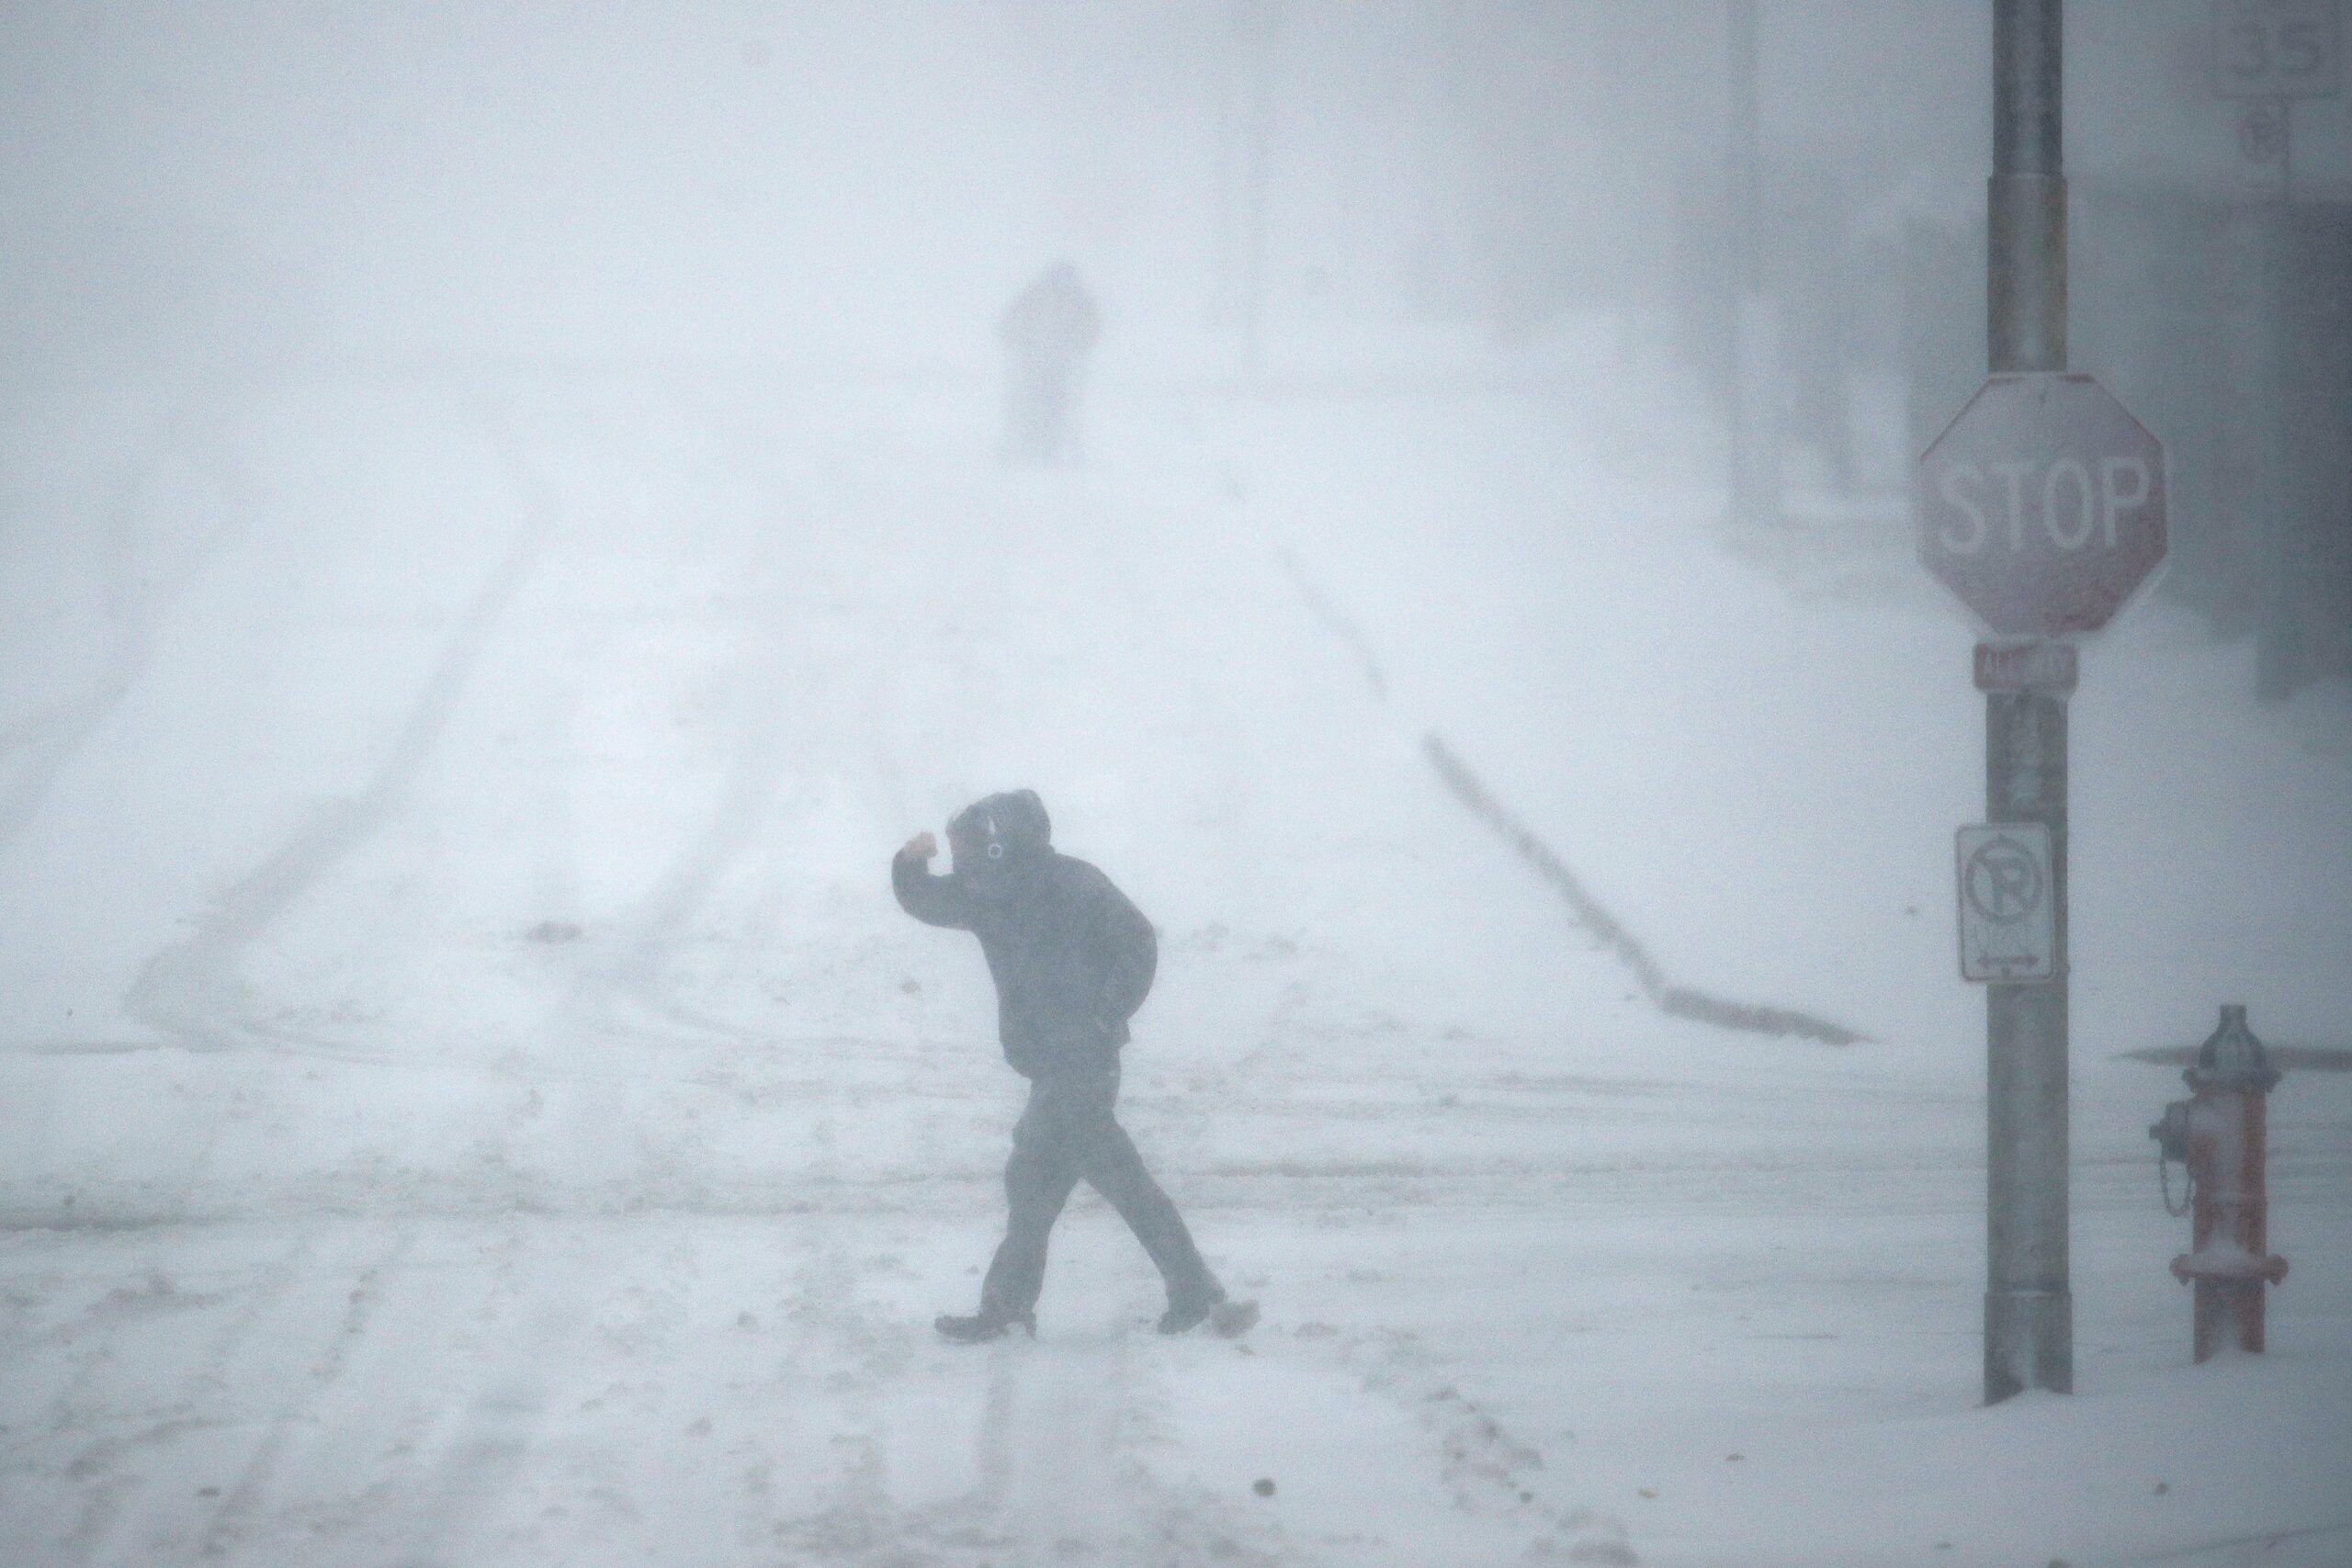 Pedestrians walk as snow falls